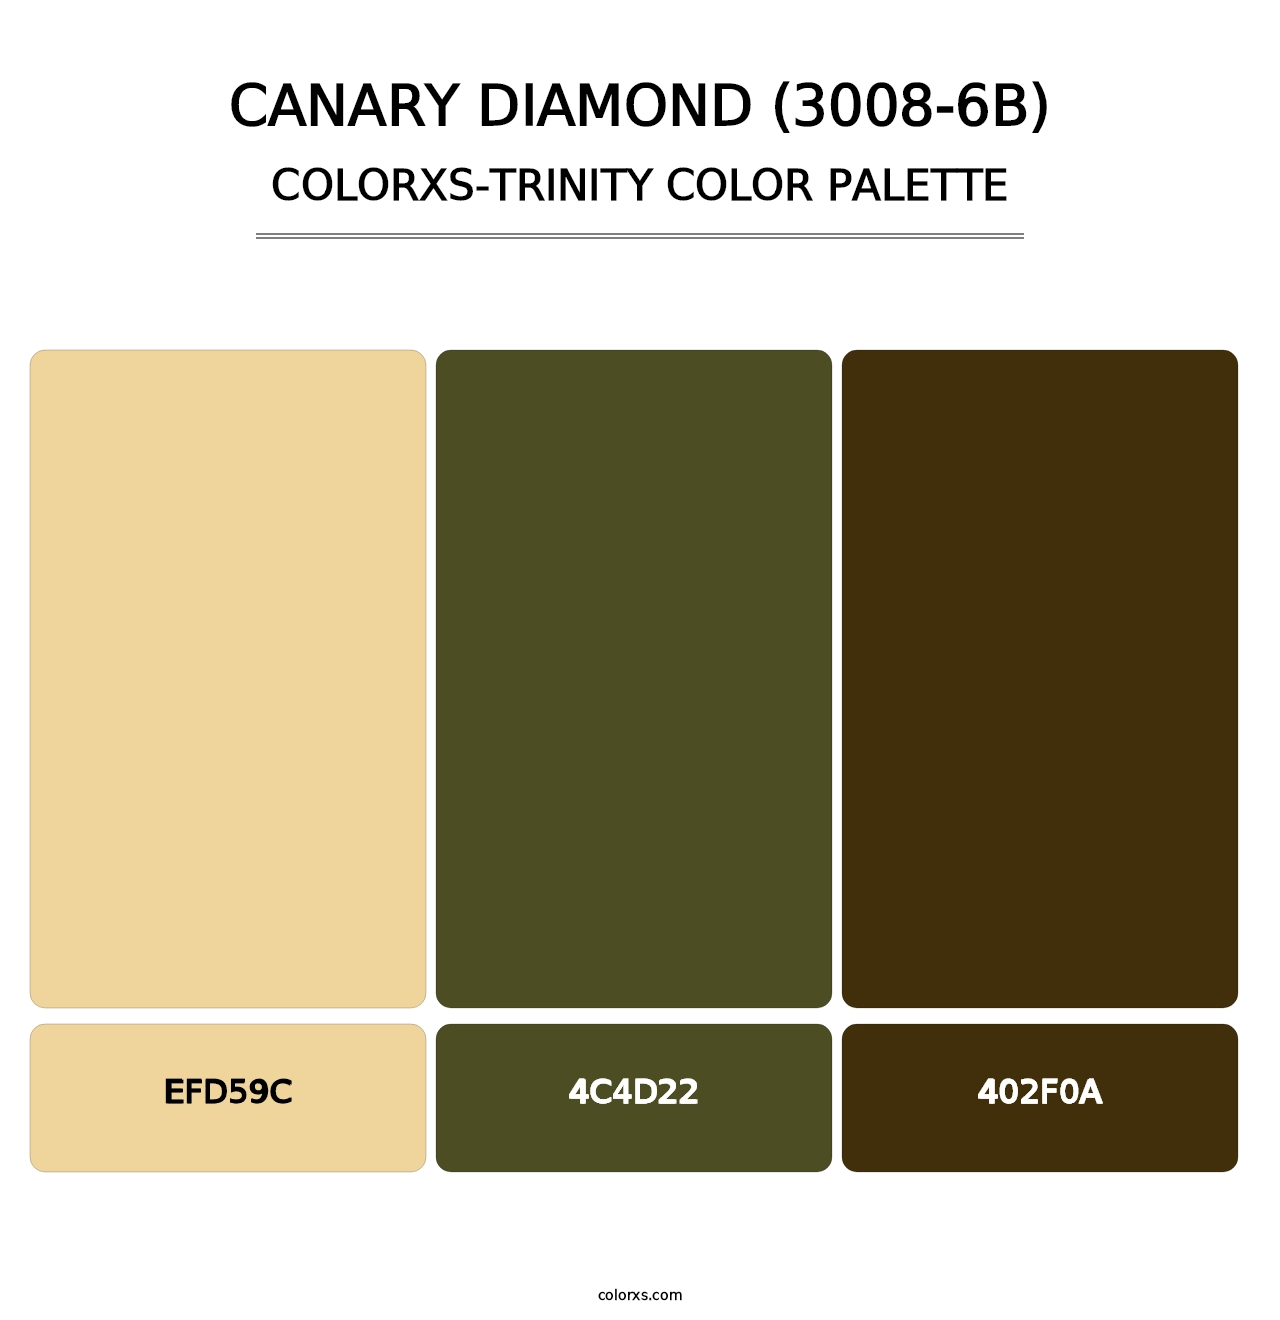 Canary Diamond (3008-6B) - Colorxs Trinity Palette